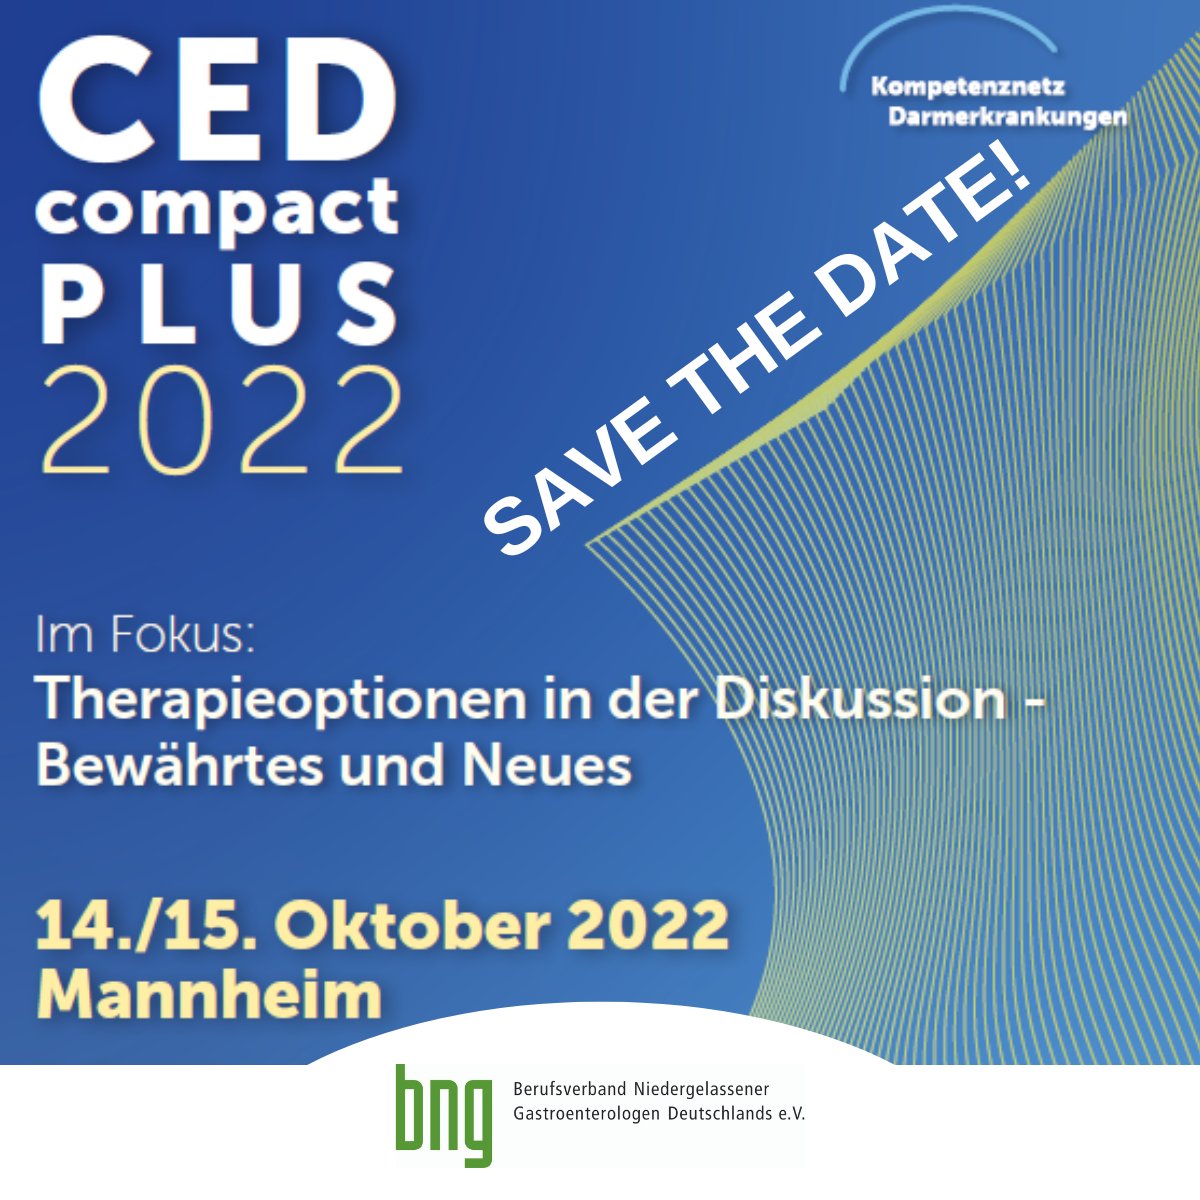 Die Fachgruppe CED im bng lädt herzlich zum Fortbildungsseminar „CED compact PLUS“ nach Mannheim ein. Wir freuen uns auf Sie als engagiertes Publikum – vor Ort oder auch online! 👉 https://t.co/EUzoz2NKcN https://t.co/LiRDguJSuQ